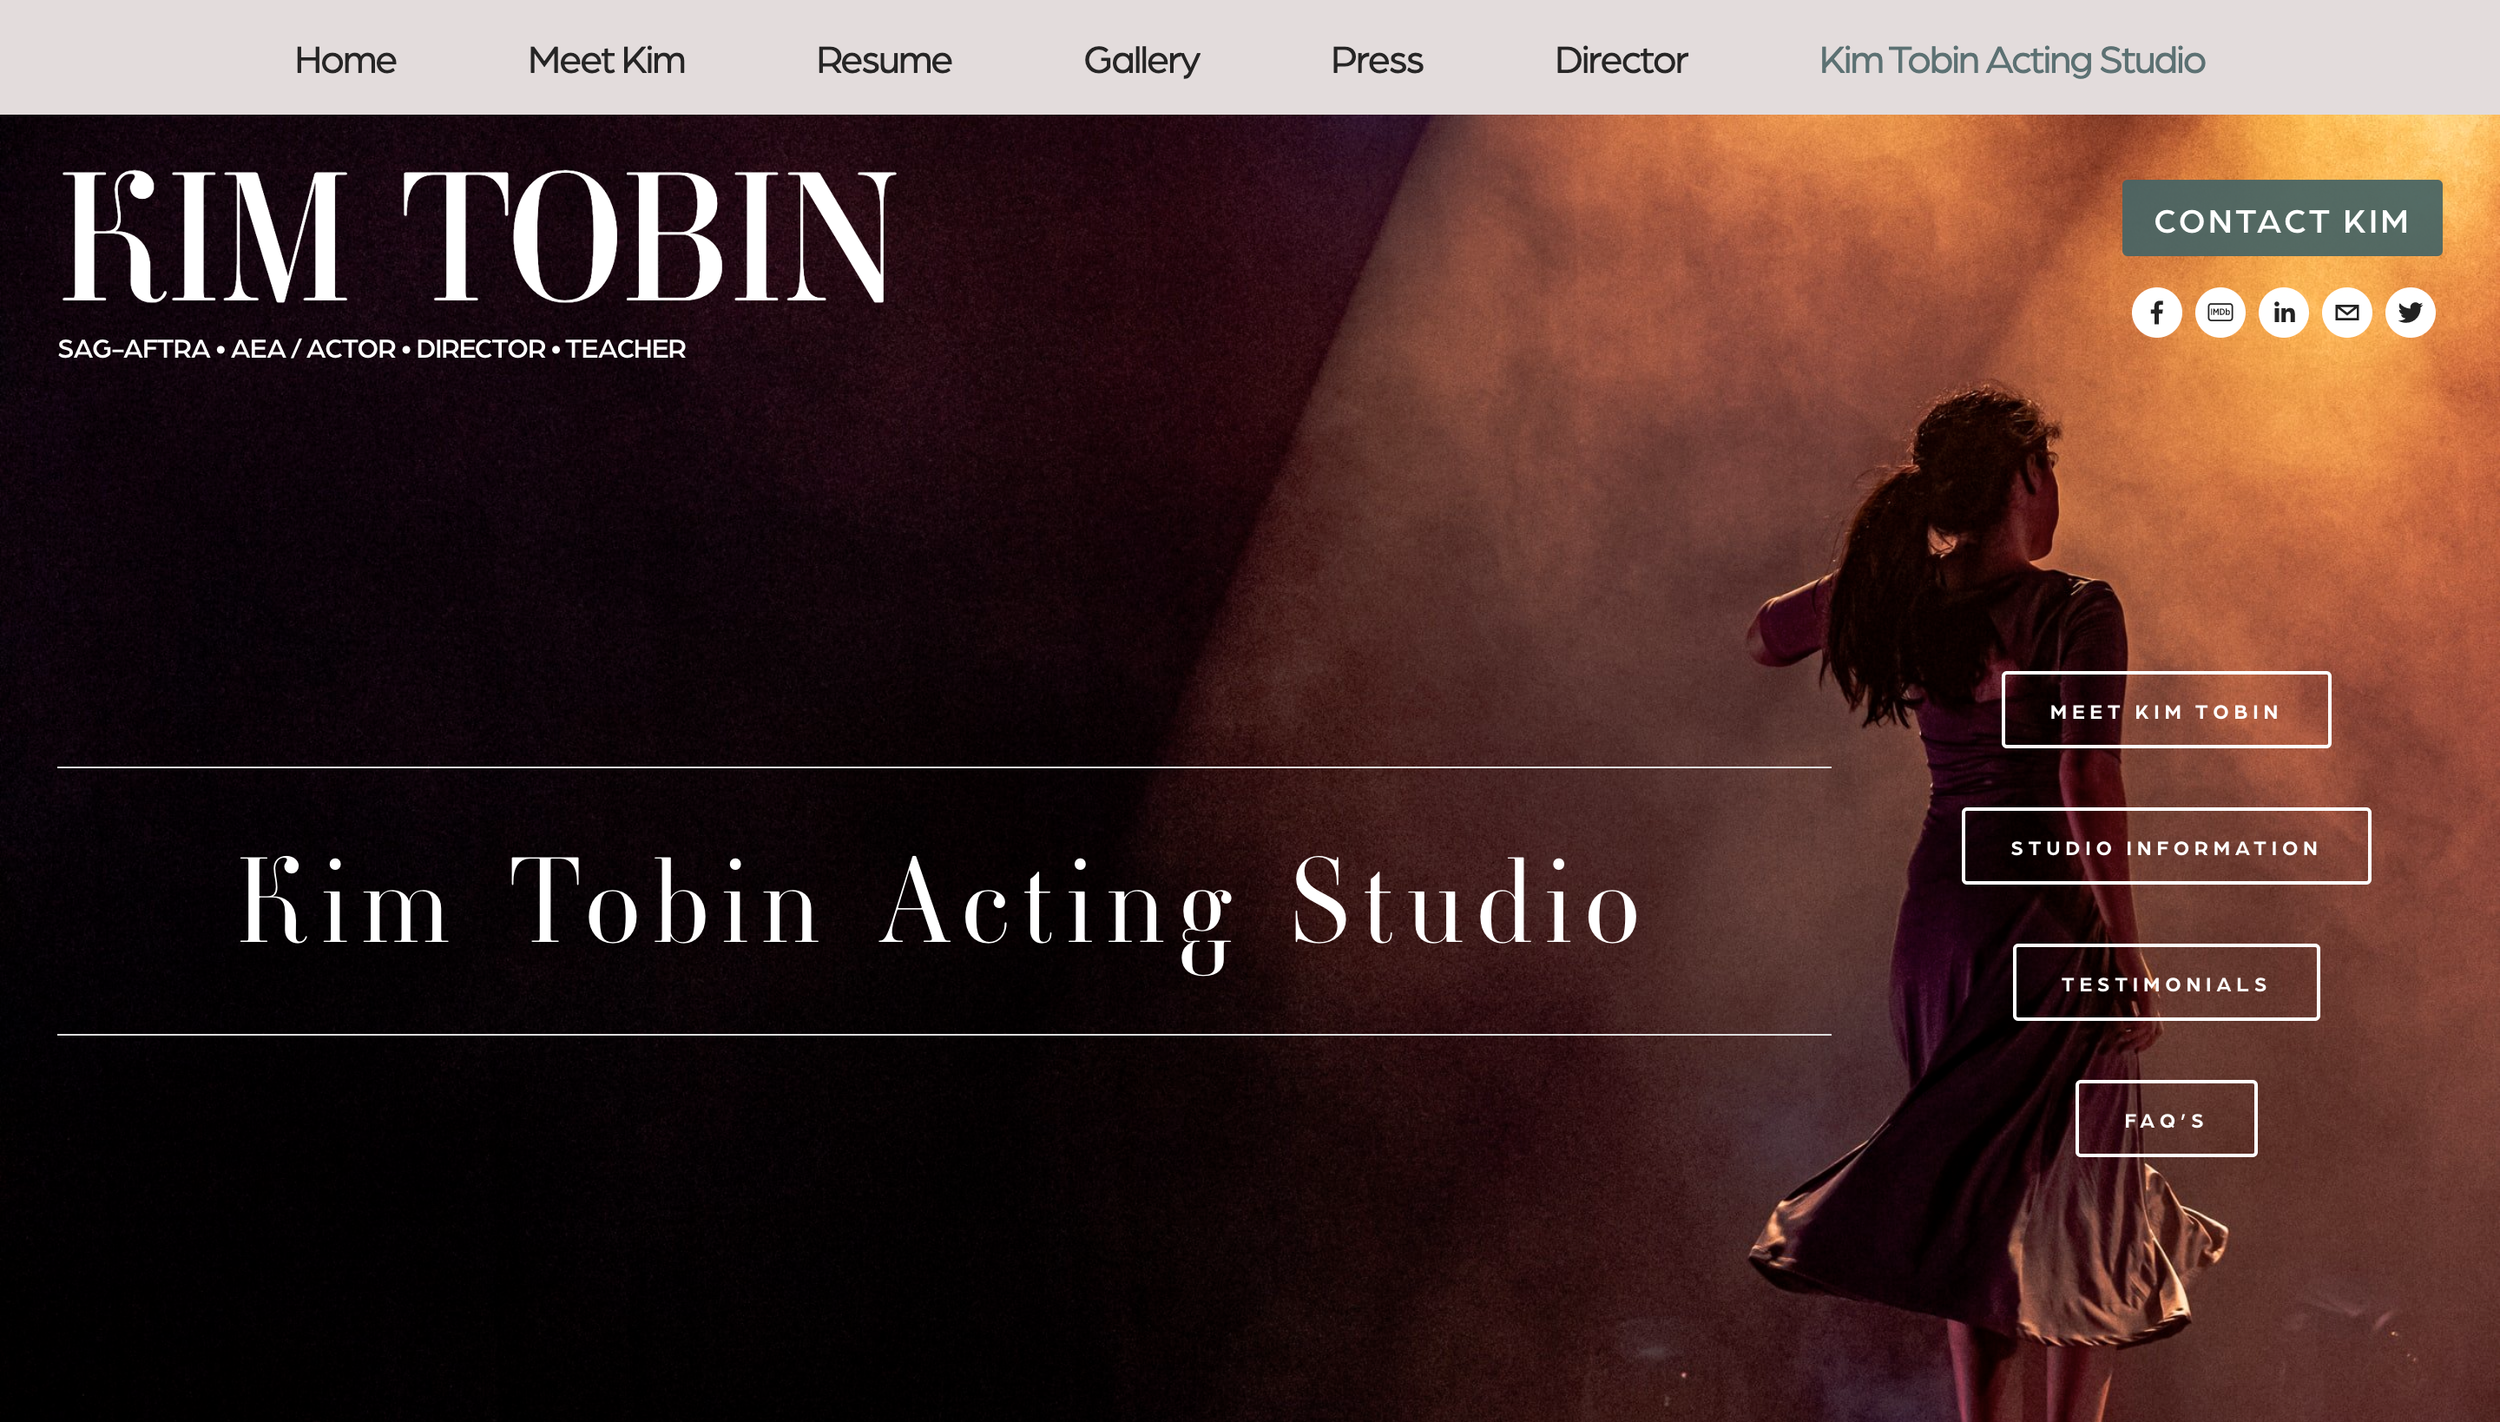 Kim Tobin Acting Studio